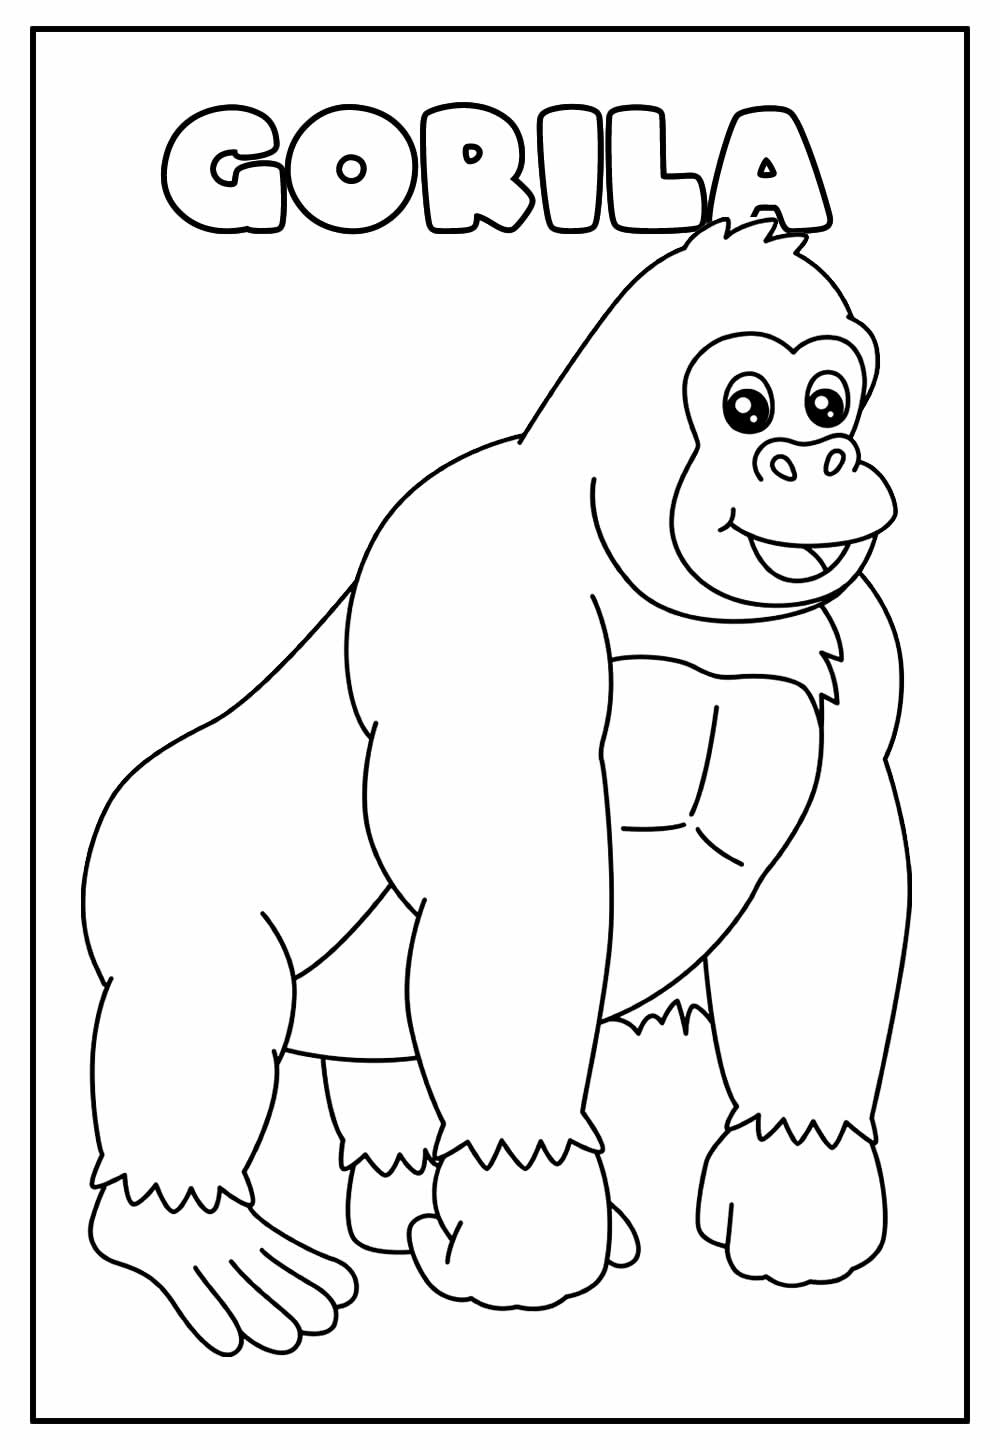 Desenho Educativo de Gorila para colorir